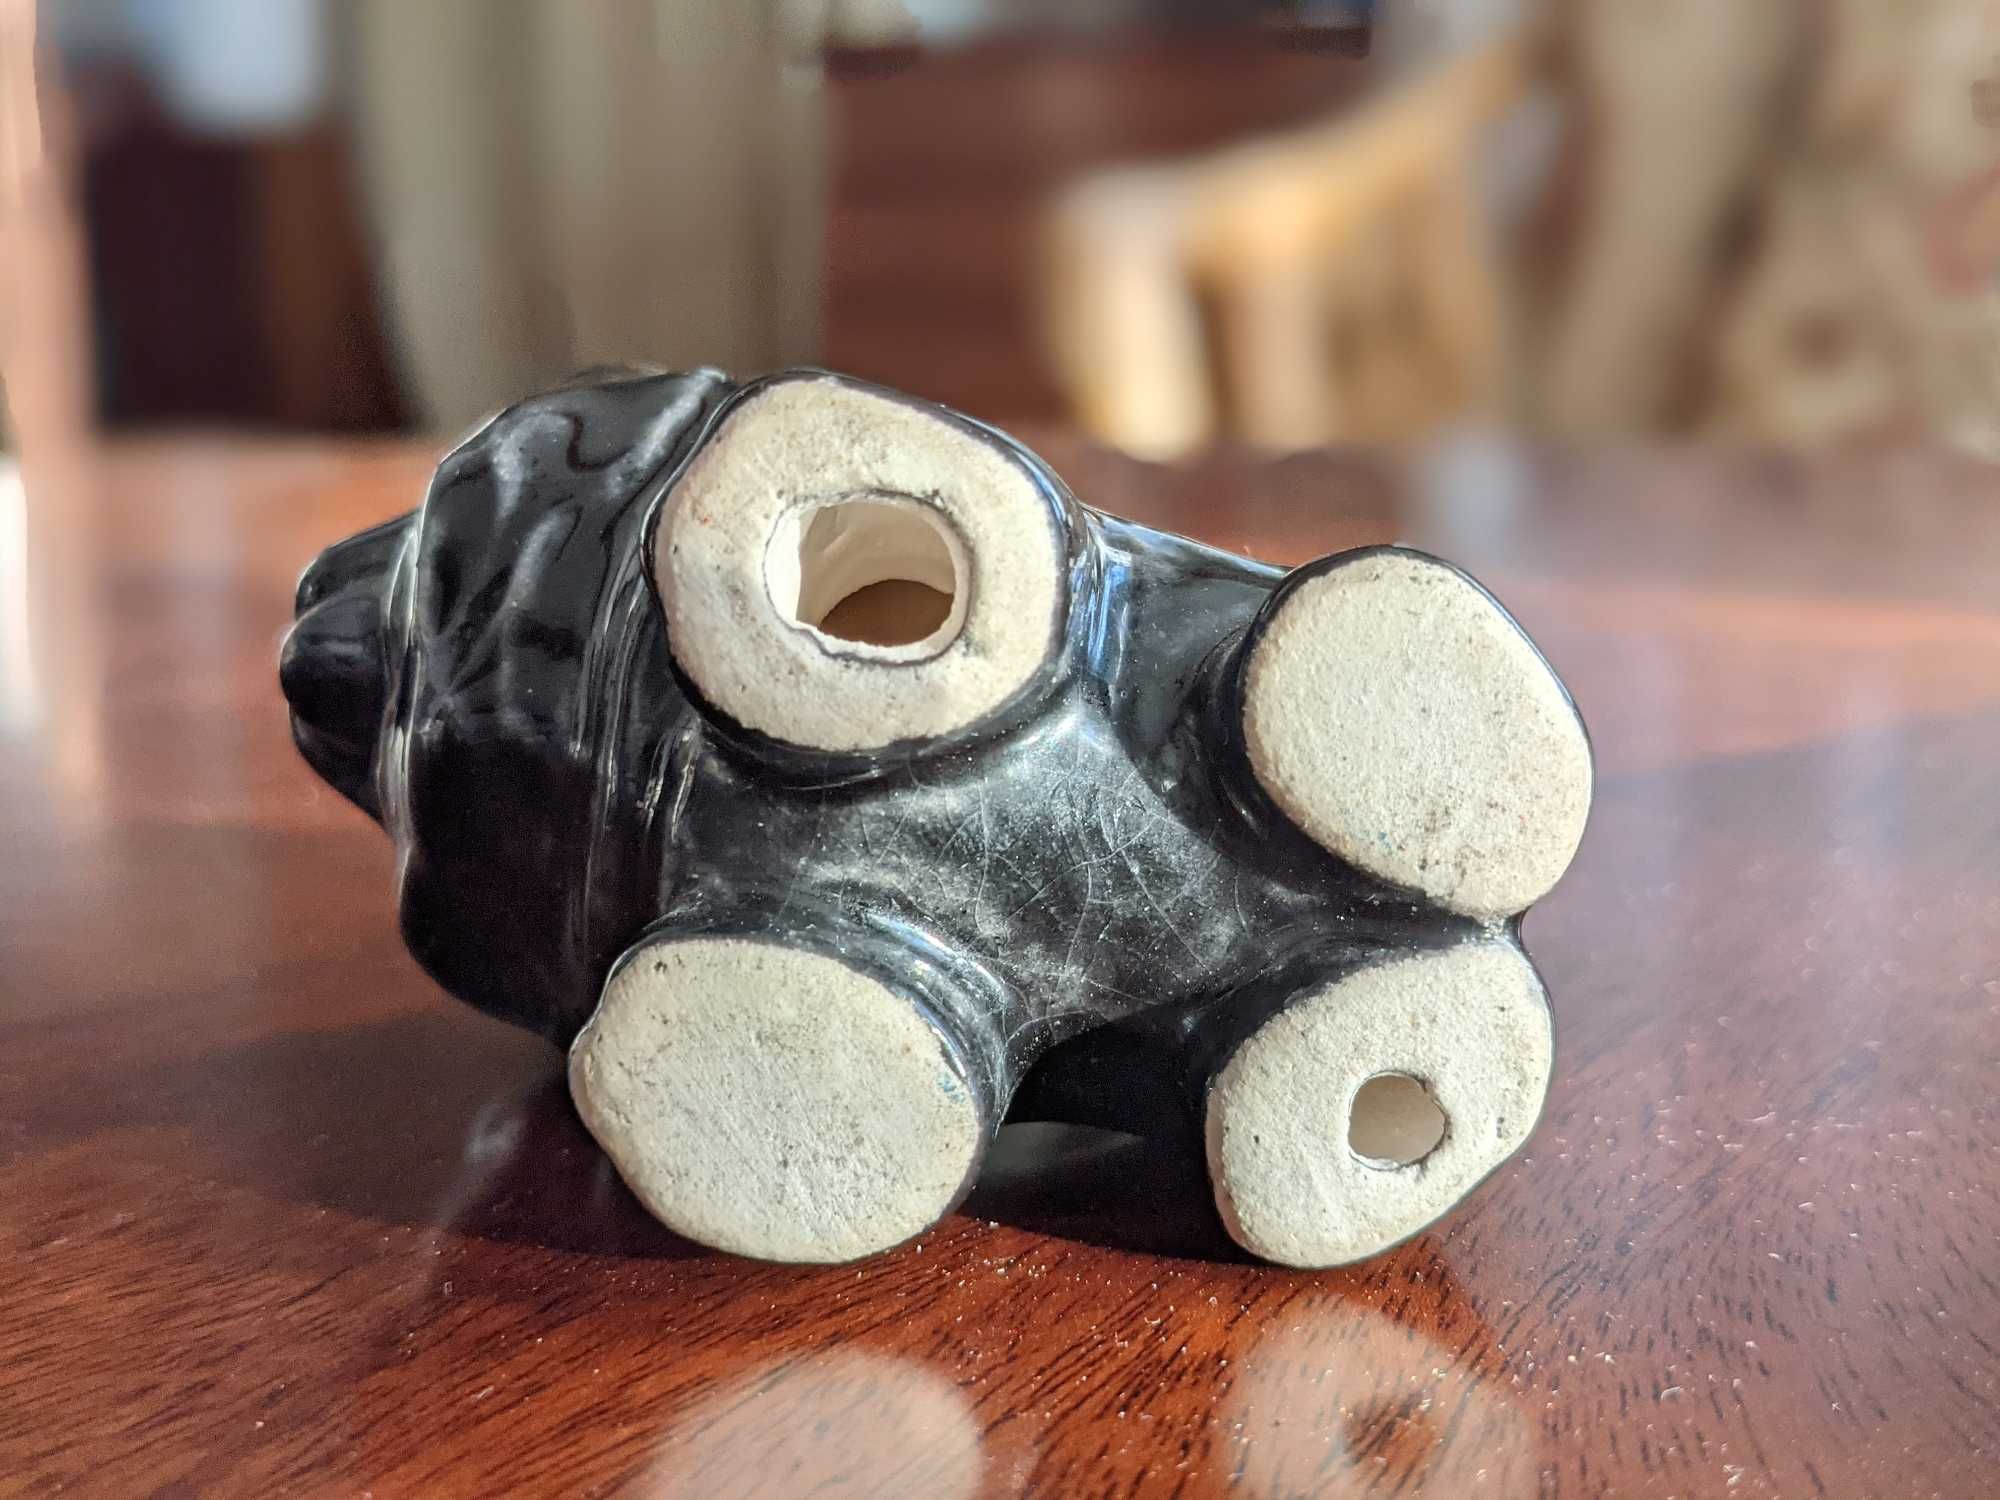 Figurka ceramiczna psa Chow-Chow